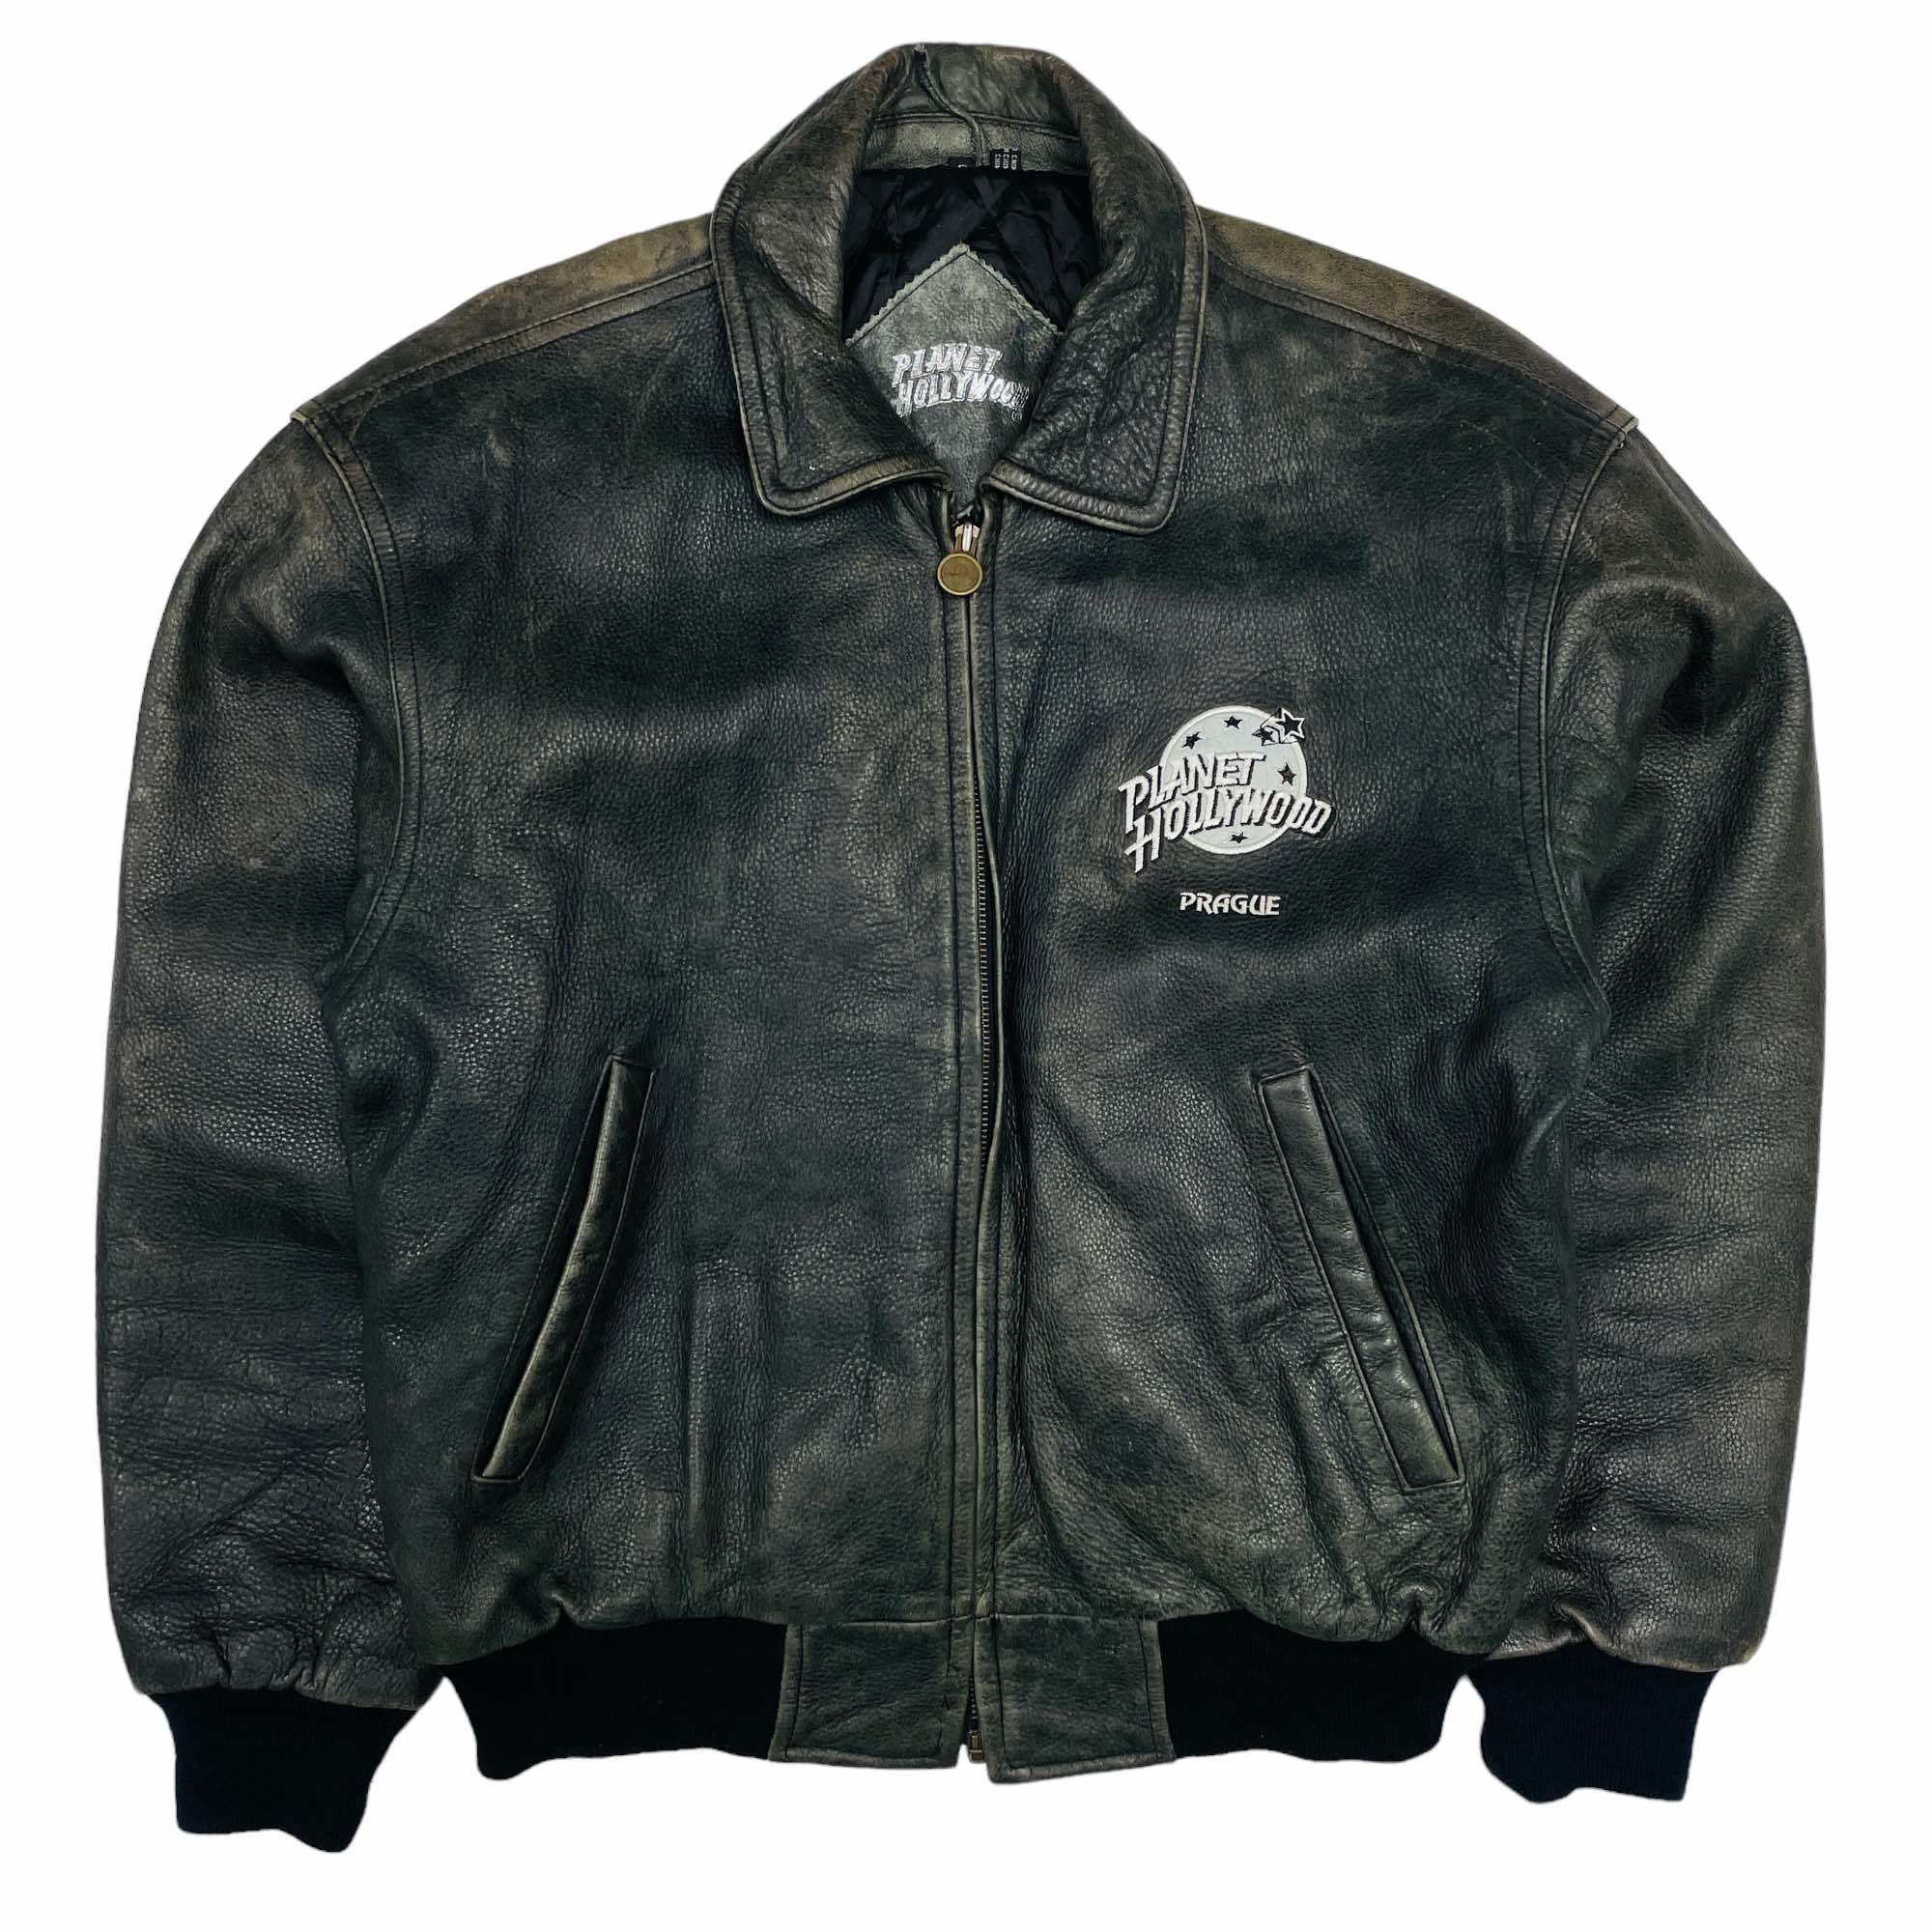 Planet Hollywood Leather Jacket - Medium